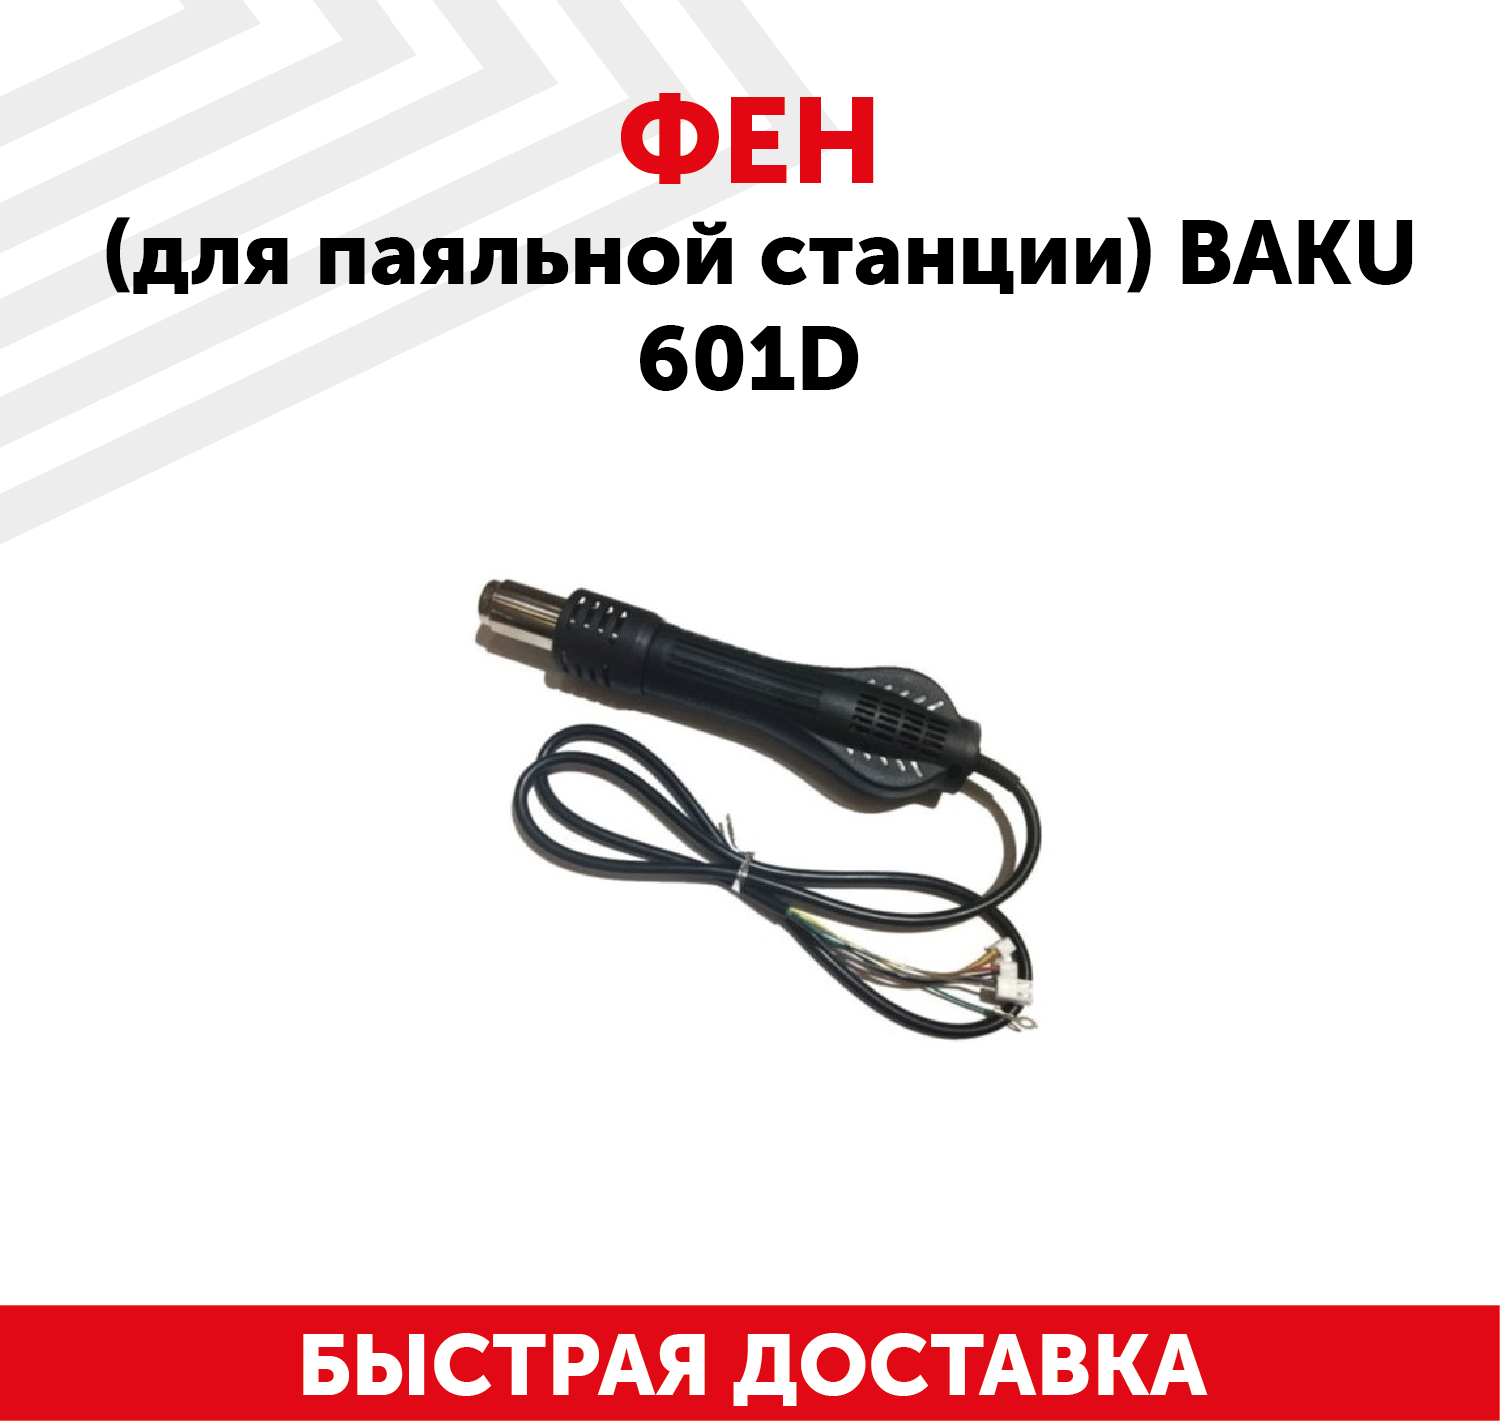 Фен (термофен термовоздушный фен) для паяльной станции Baku 601D